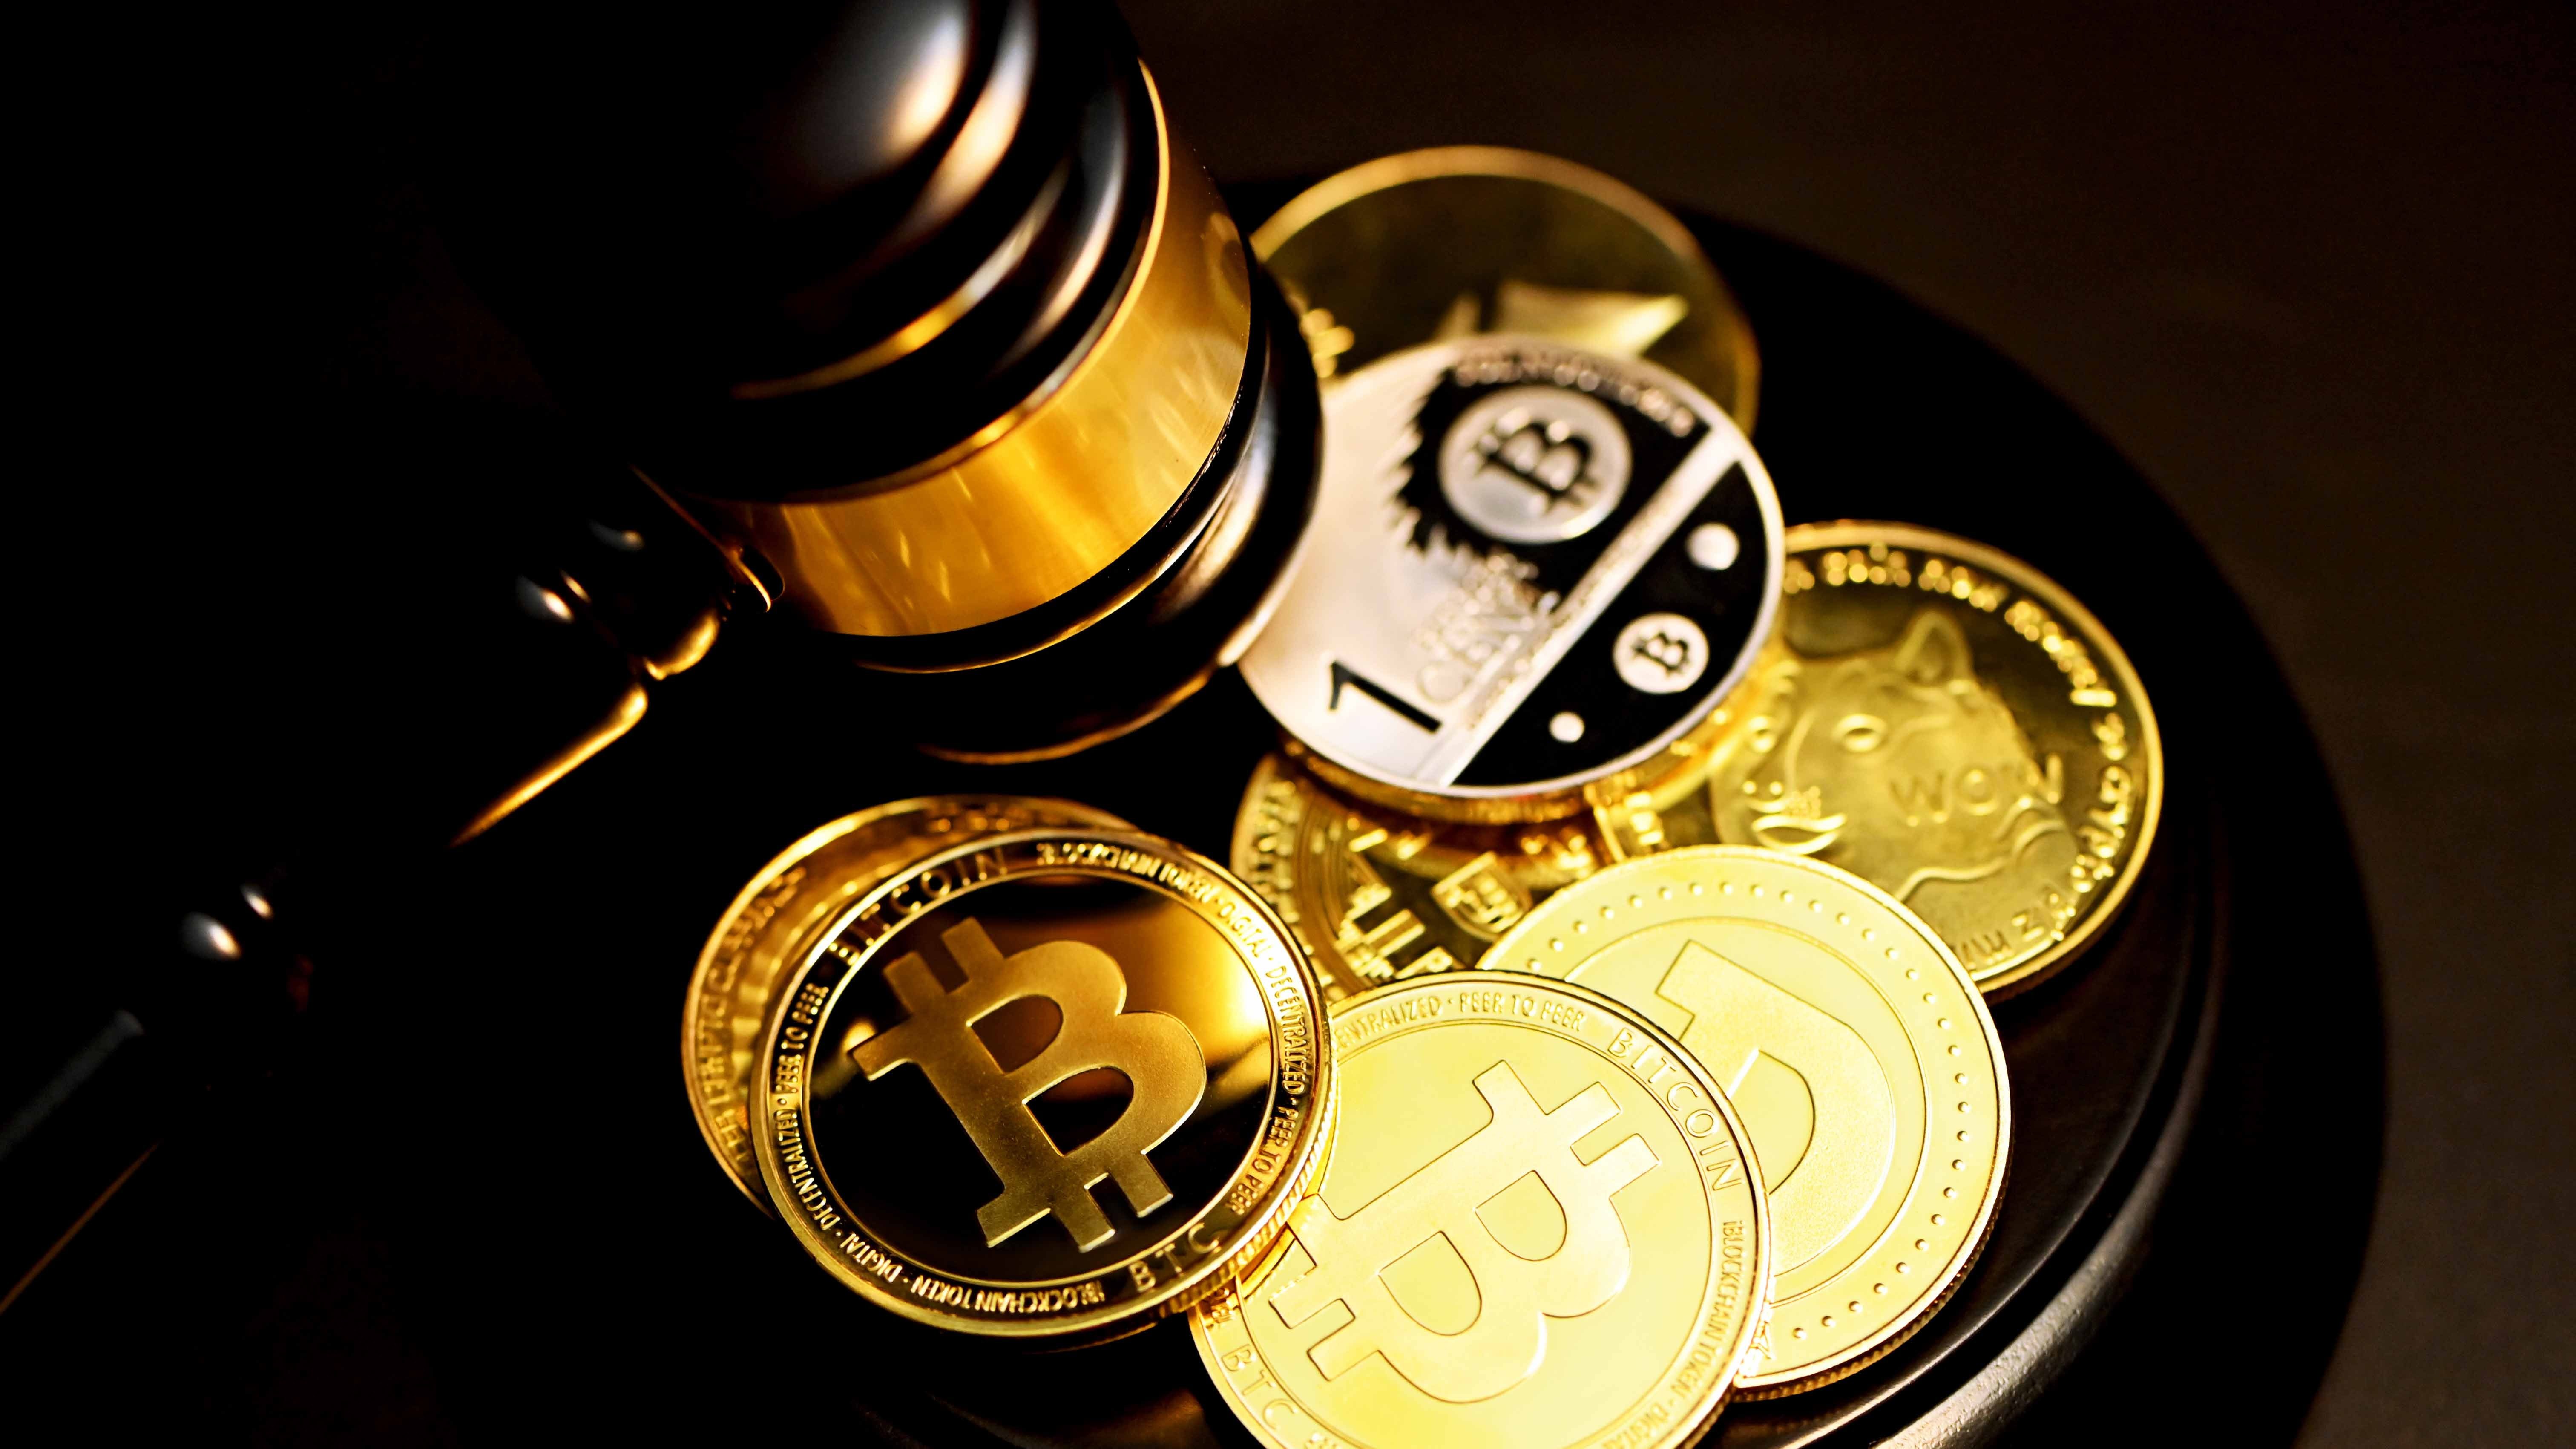 Jovens roubam US$ 800 mil em bitcoin e pais são processados | Finanças